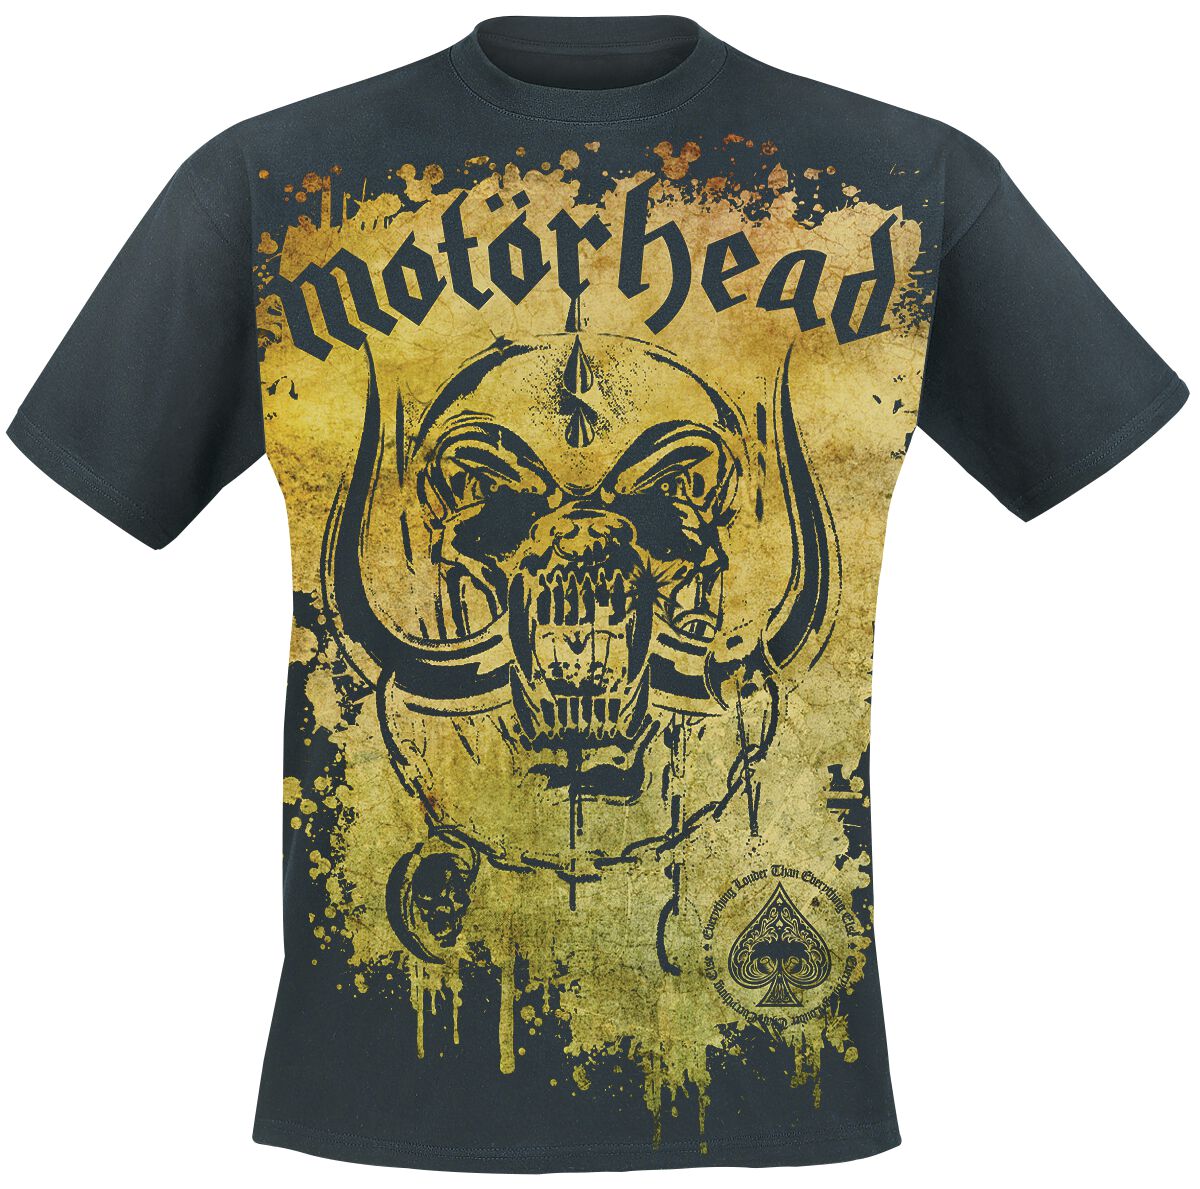 Motörhead T-Shirt - Acid Splatter - M bis 3XL - für Männer - Größe XL - schwarz  - Lizenziertes Merchandise!